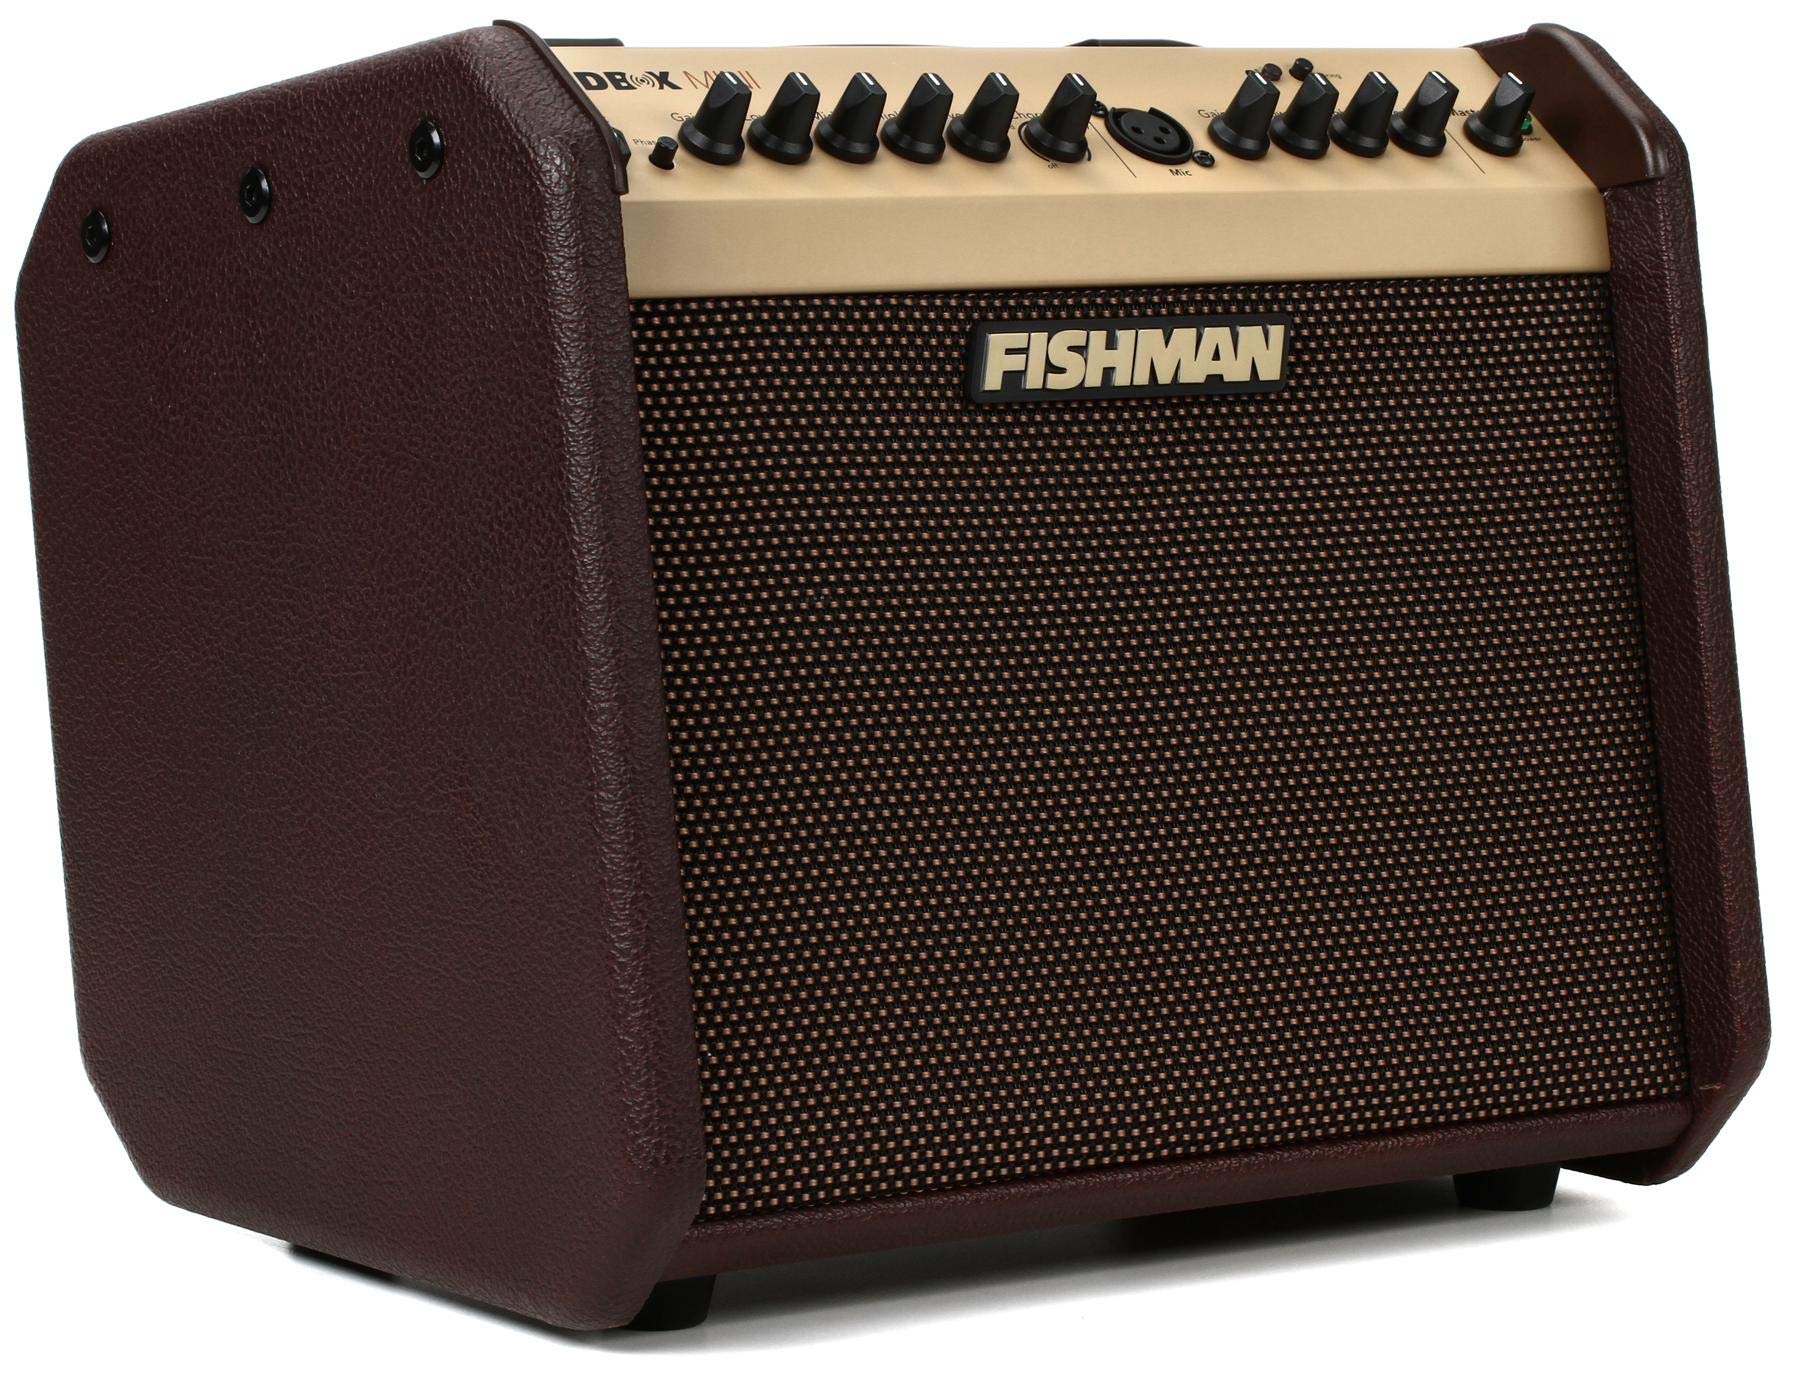 Fishman Loudbox Mini BT 60-Watt 1x6.5 Inches Acoustic C...